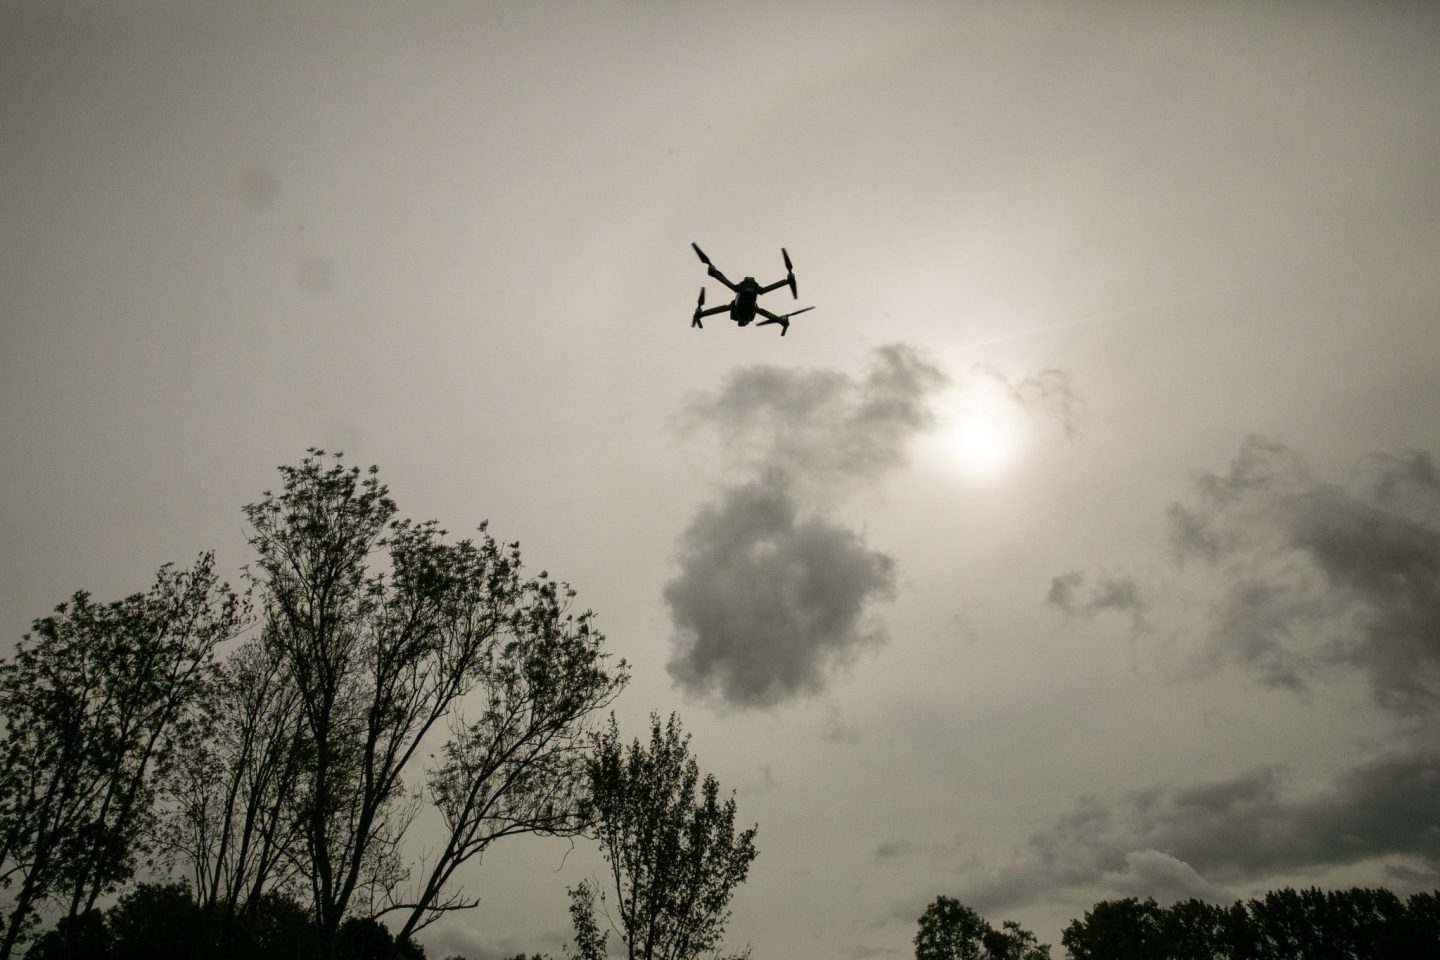 Toezichthouder wordt dronepiloot